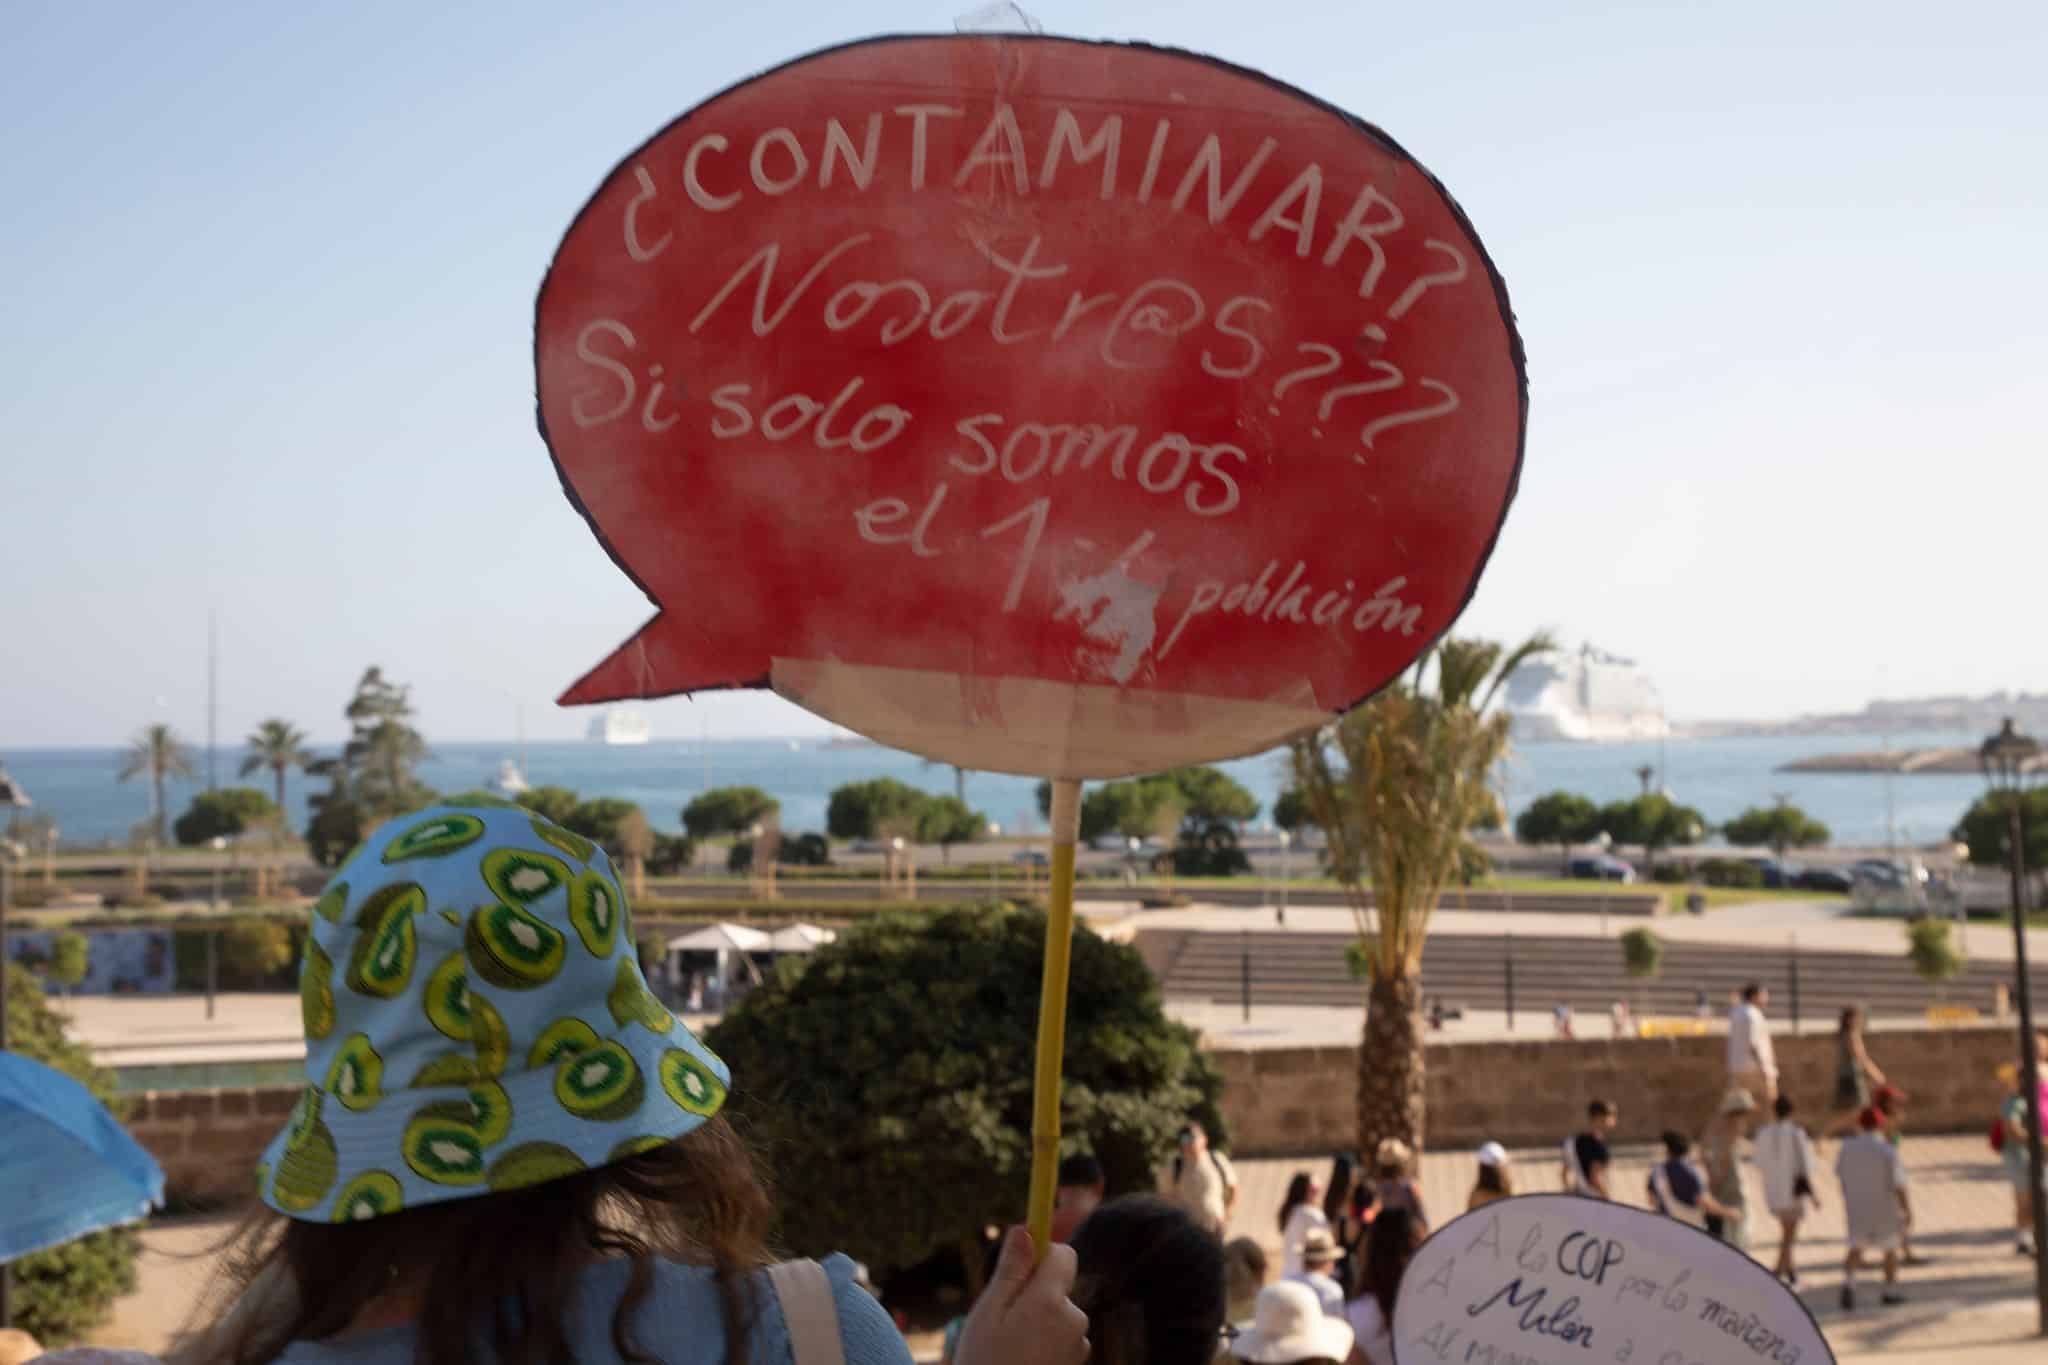 Tausende demonstrieren gegen Massentourismus auf Mallorca